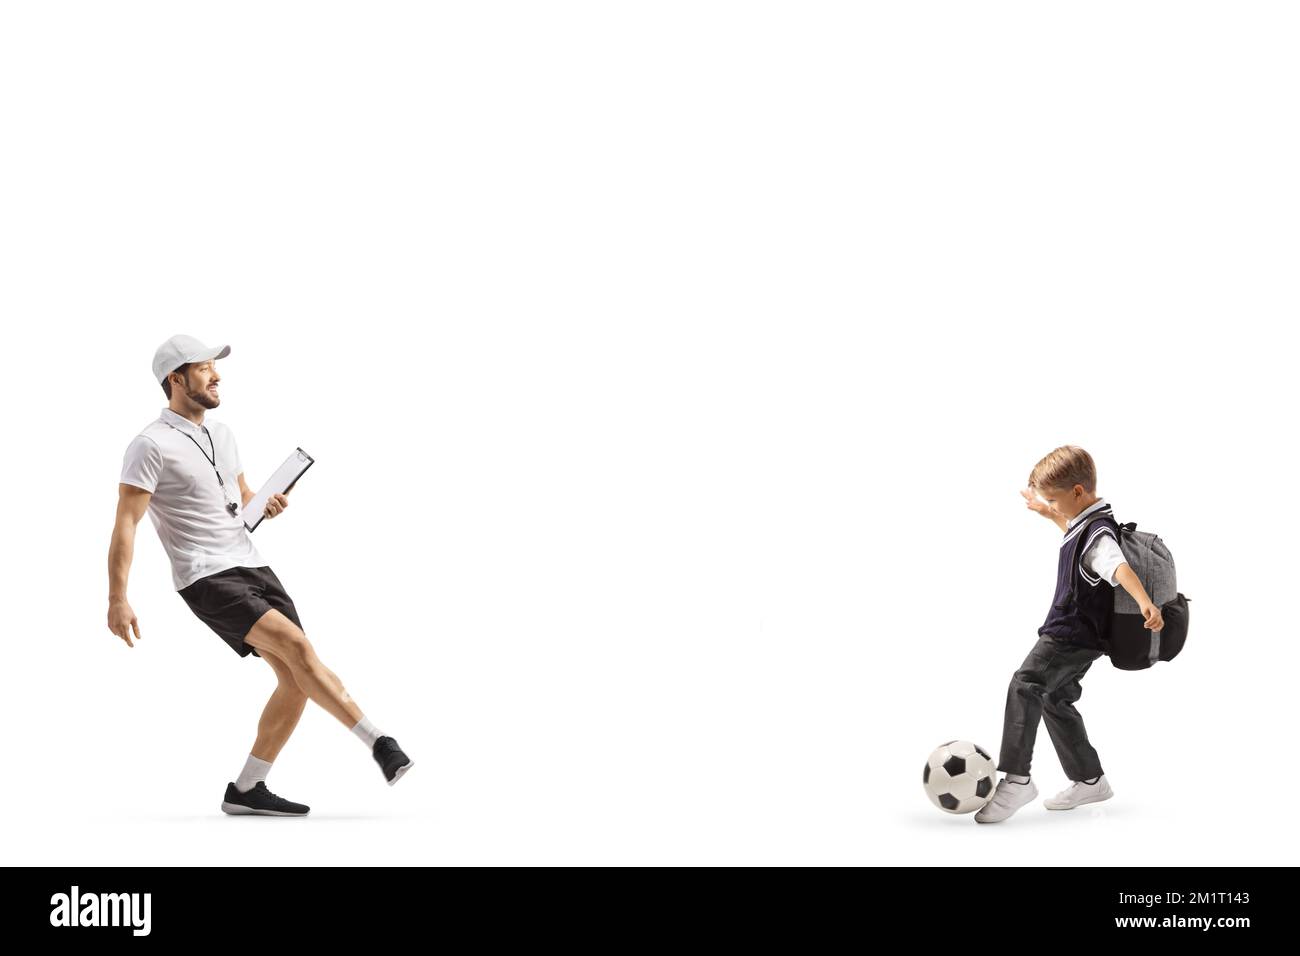 Entrenador de fútbol con un silbato sosteniendo un sujetapapeles y entrenando con un estudiante de escuela aislado sobre fondo blanco Foto de stock